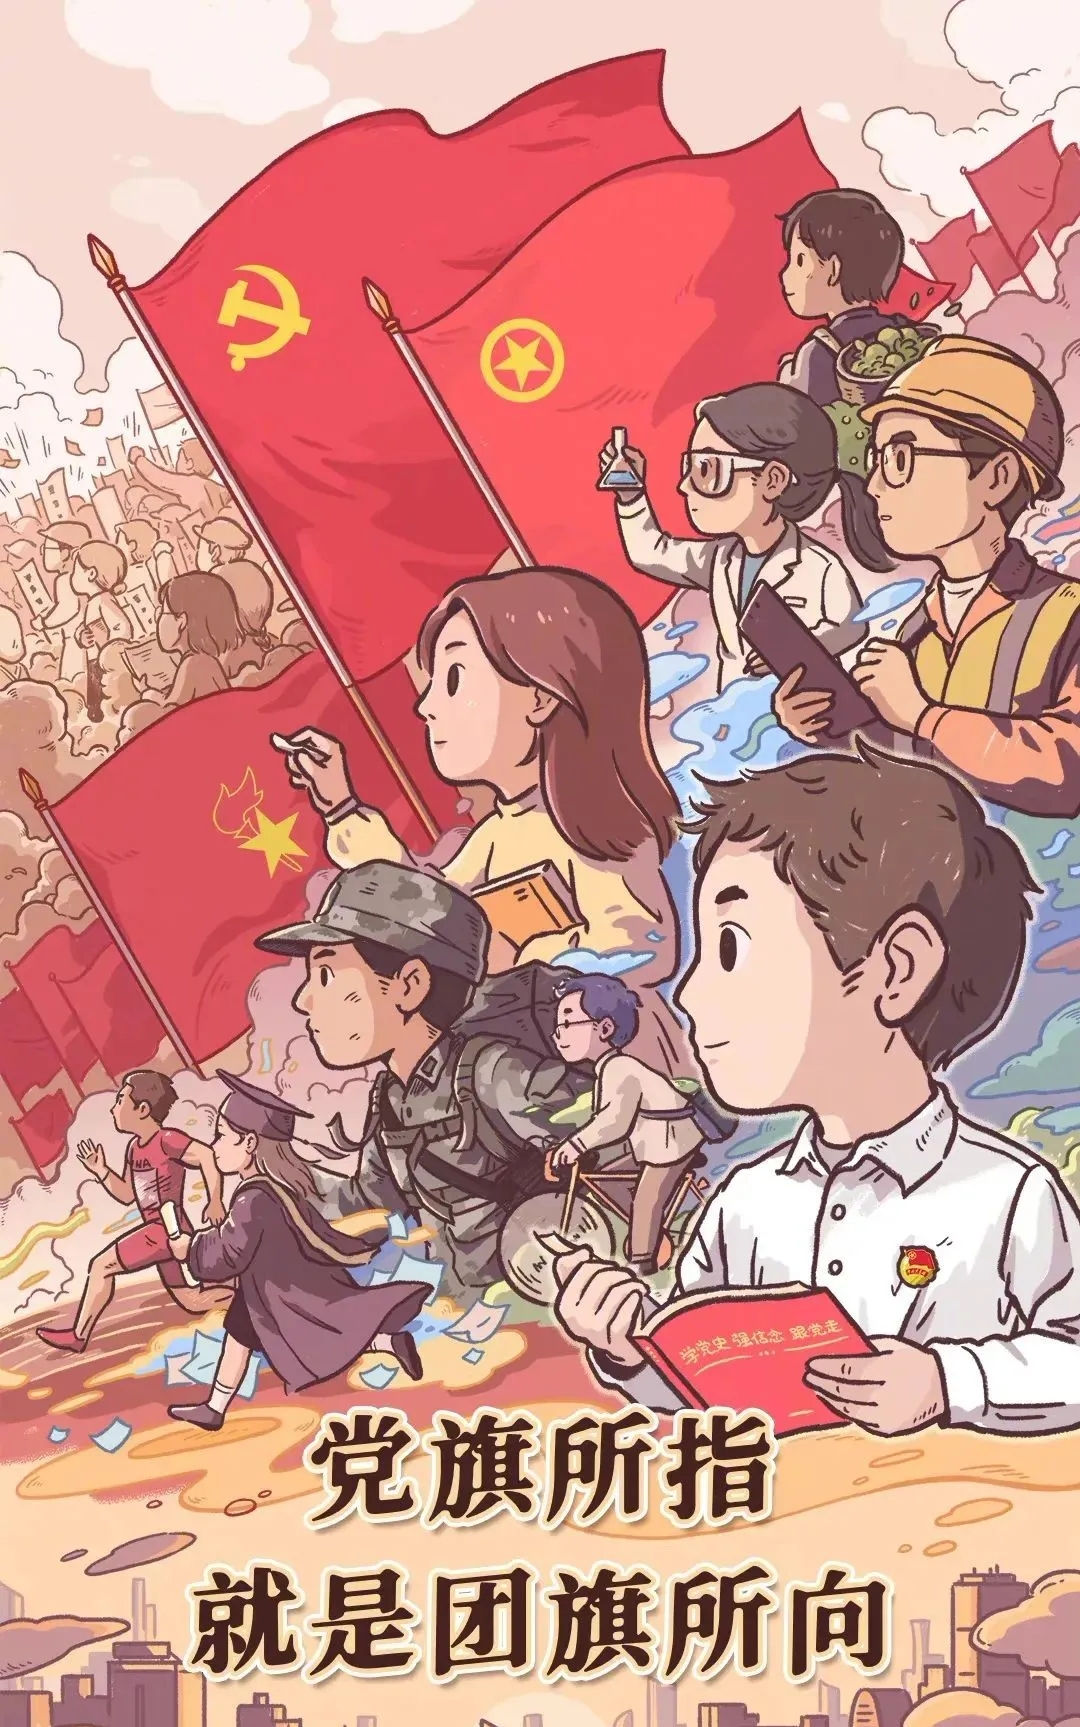 五四青年节起源于五四运动,是1919年五月四日发生在北京以青年为主的